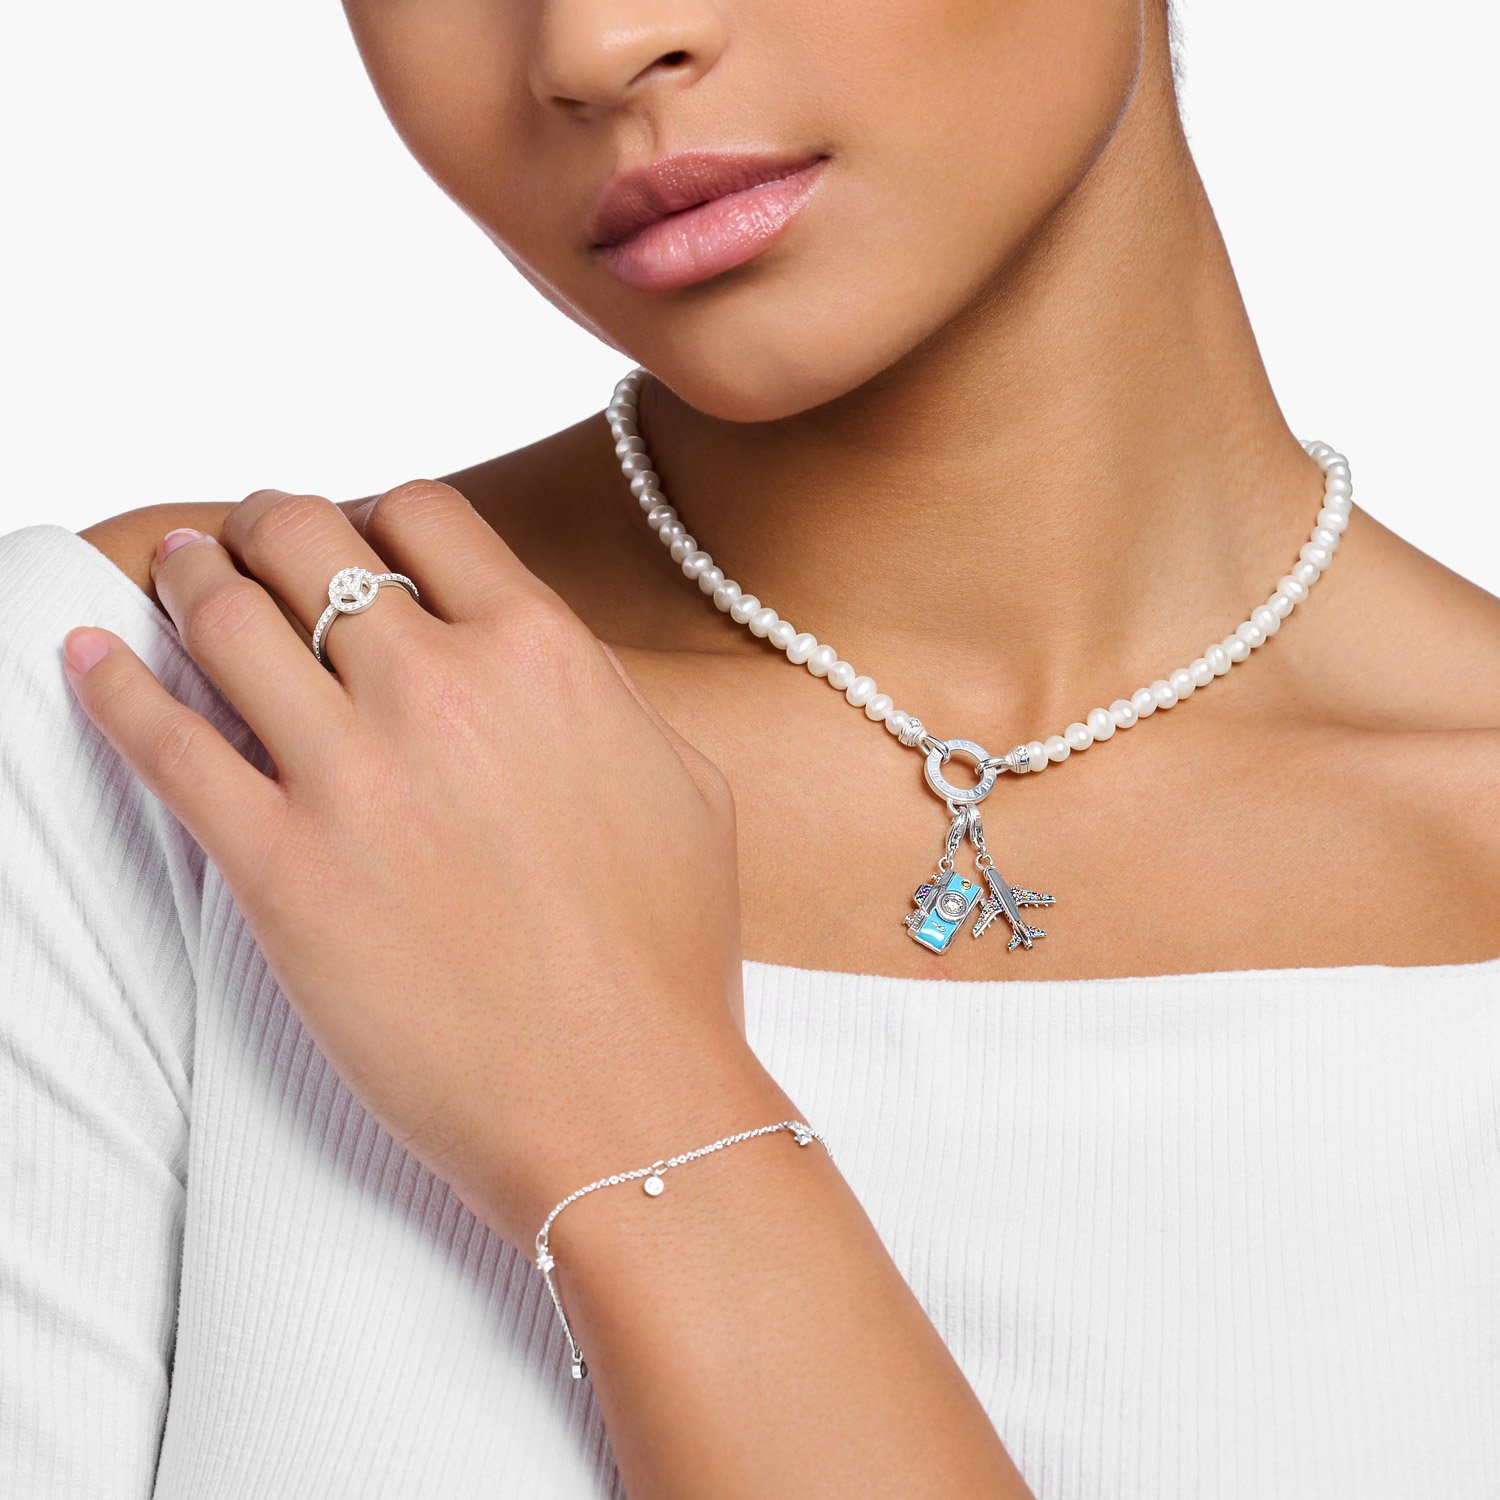 Thomas Sabo Damen-Halskette Charms uhrcenter mit Weißen Perlen • KE2187-167-14-L45v für